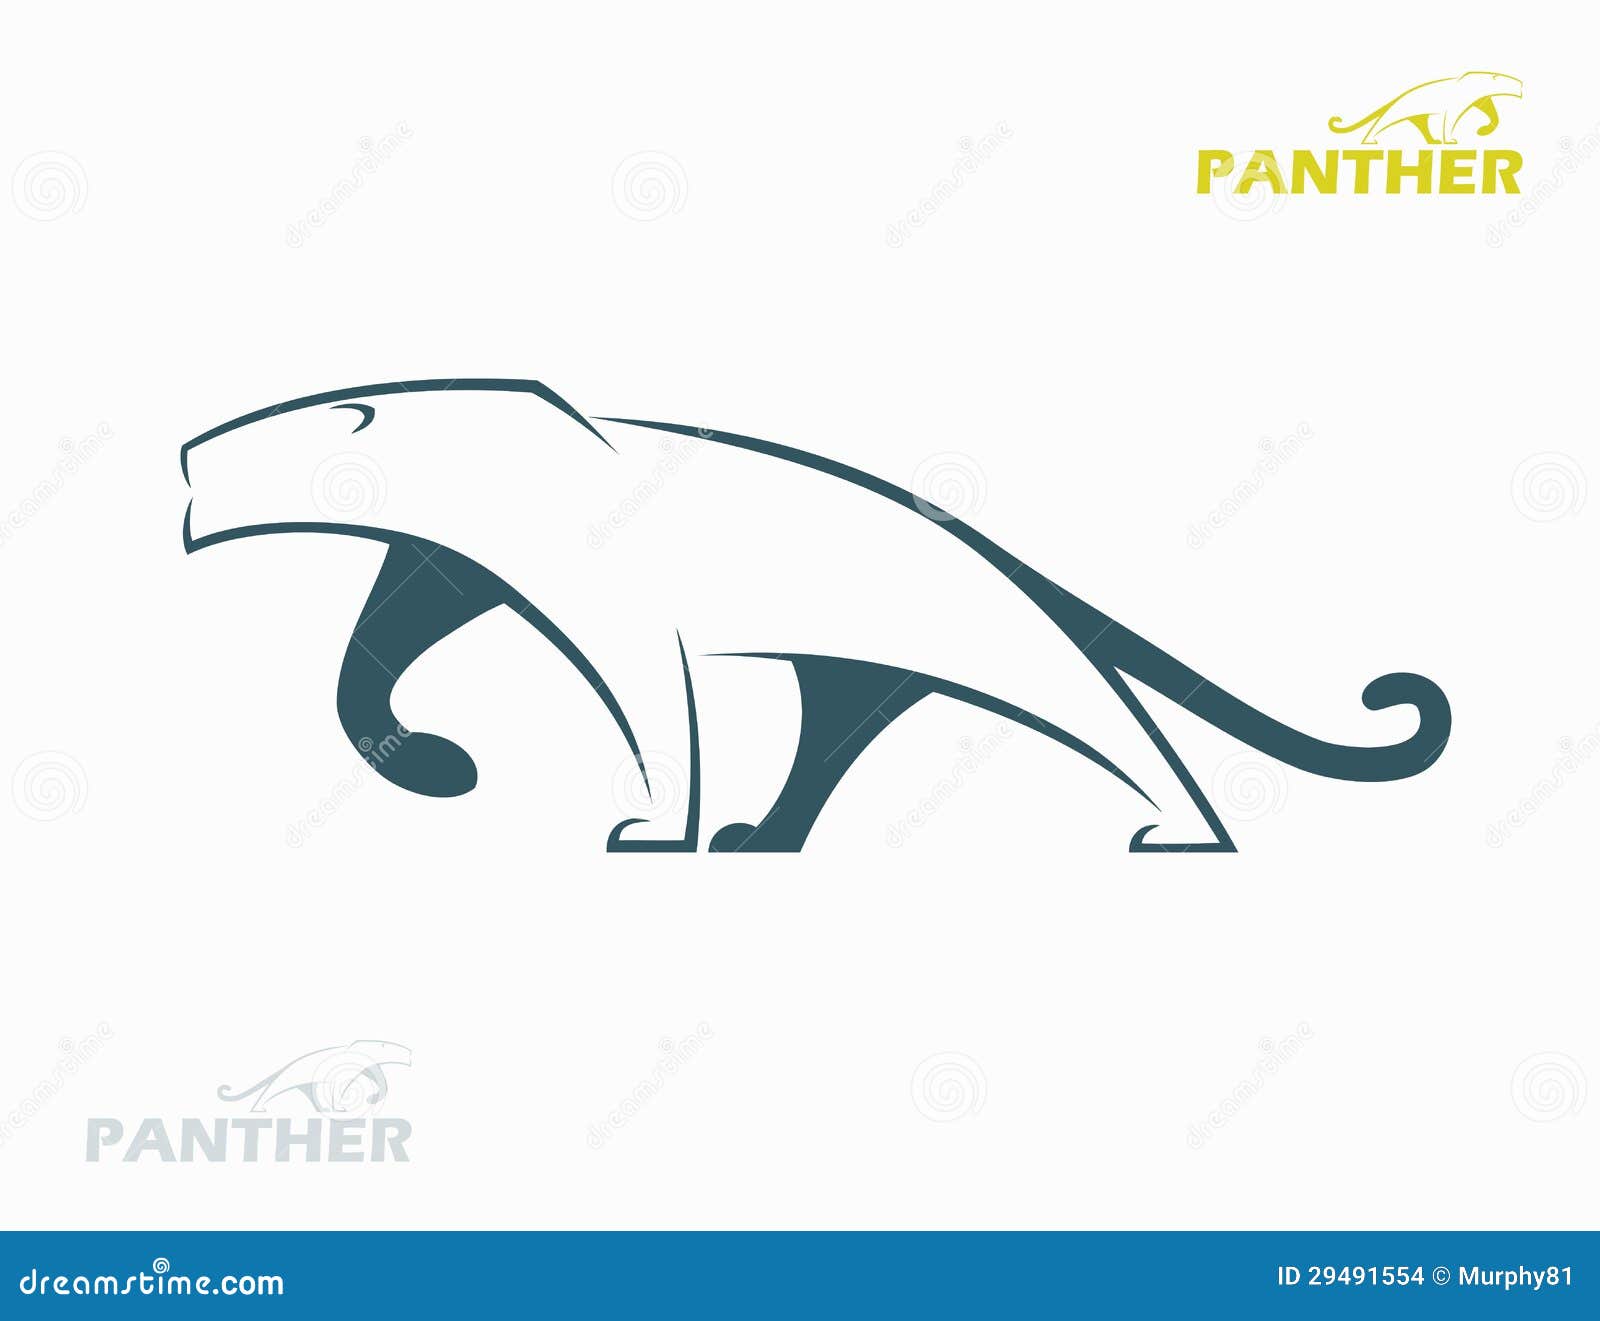 Ярлык пантеры. Иллюстрация вектора ярлыка пантеры